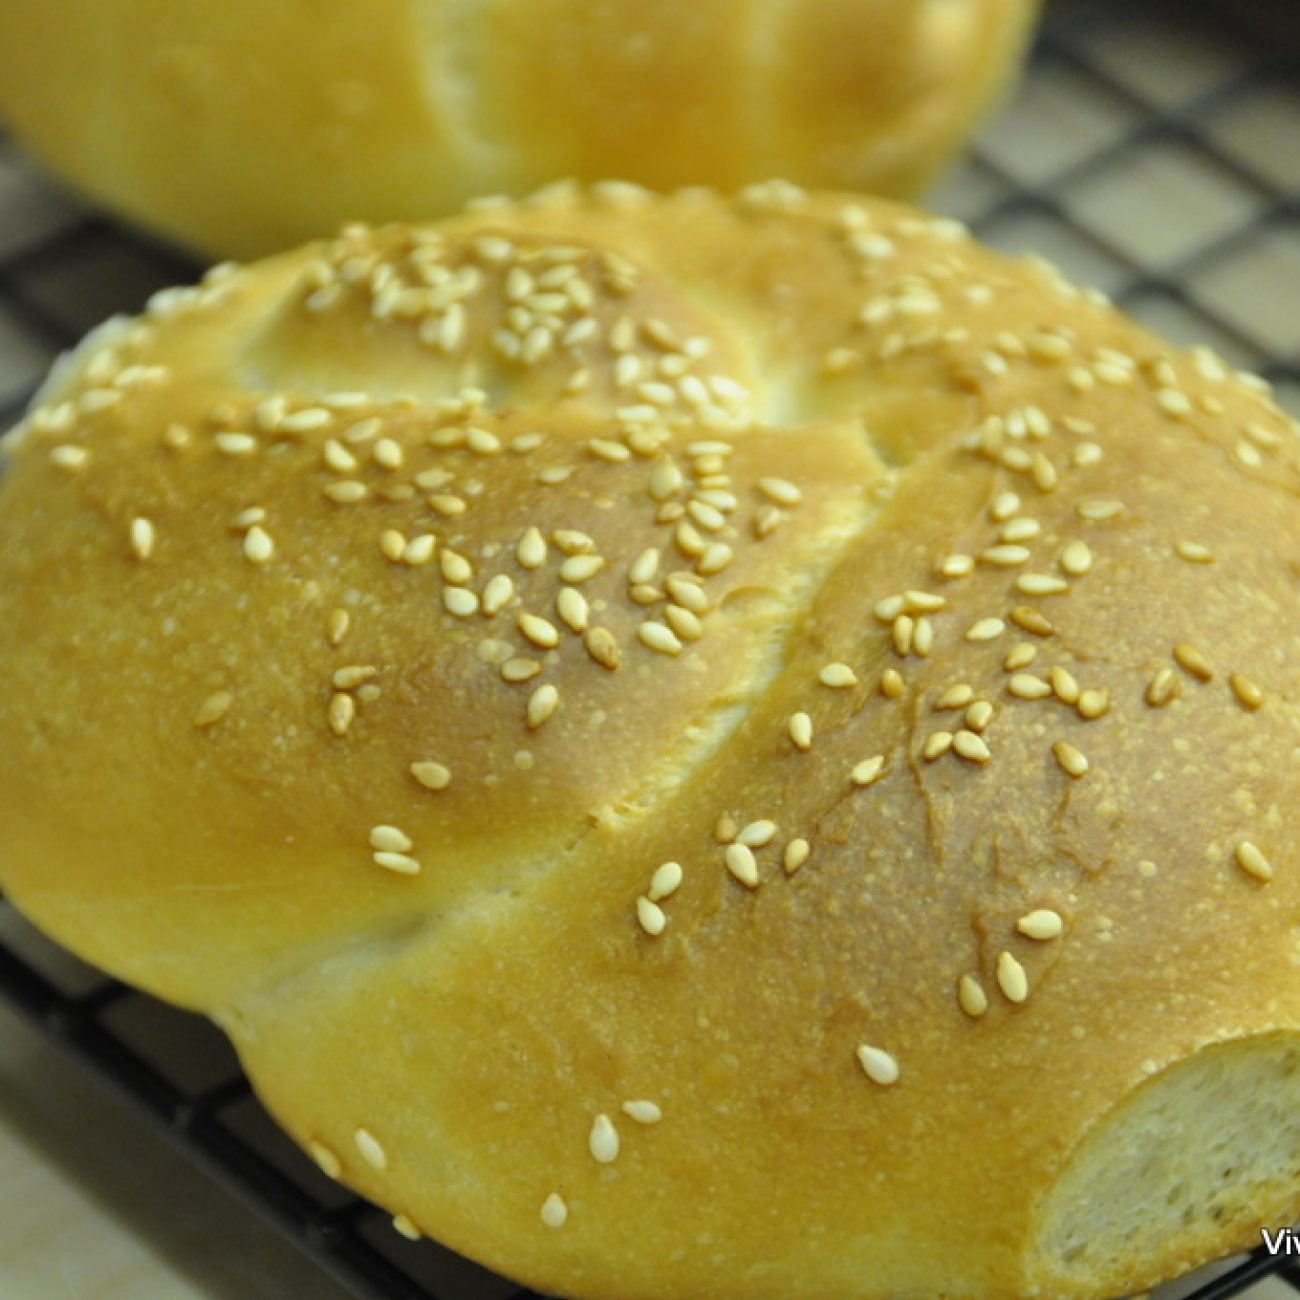 Home-made oil bread recipe